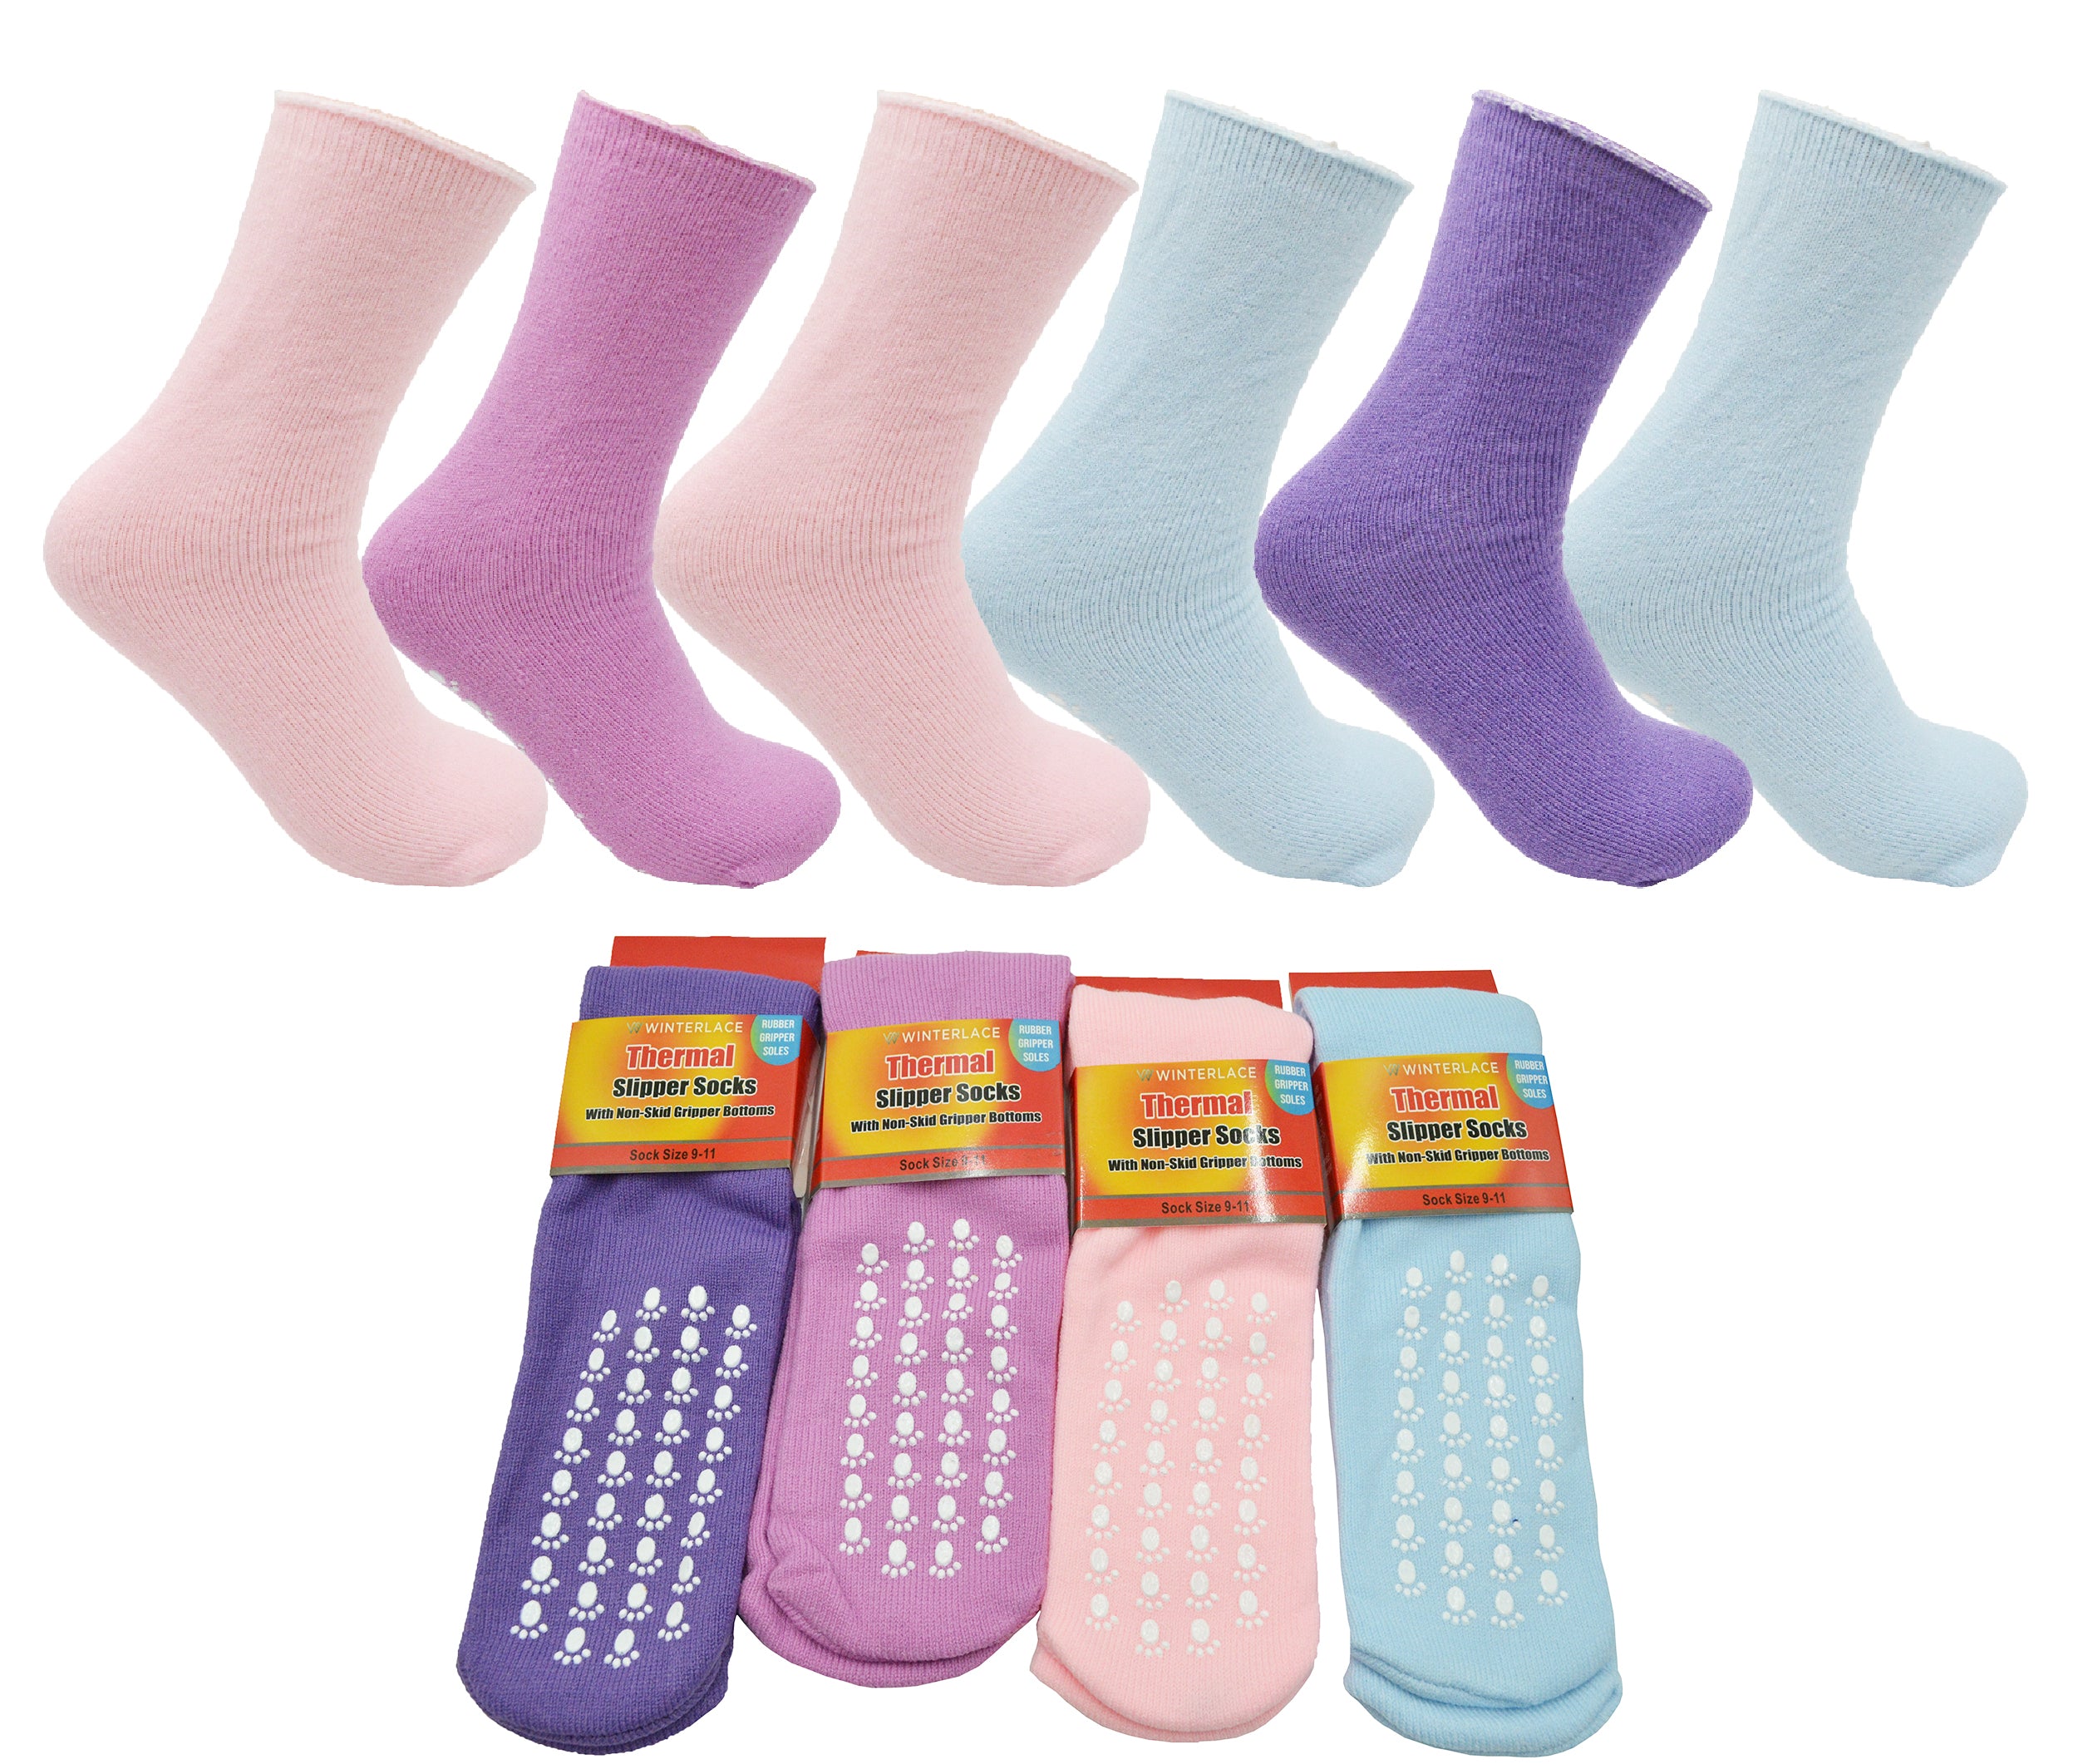 12 Pairs Thermal Non-Slip Slipper Socks, Unisex Bulk Pack